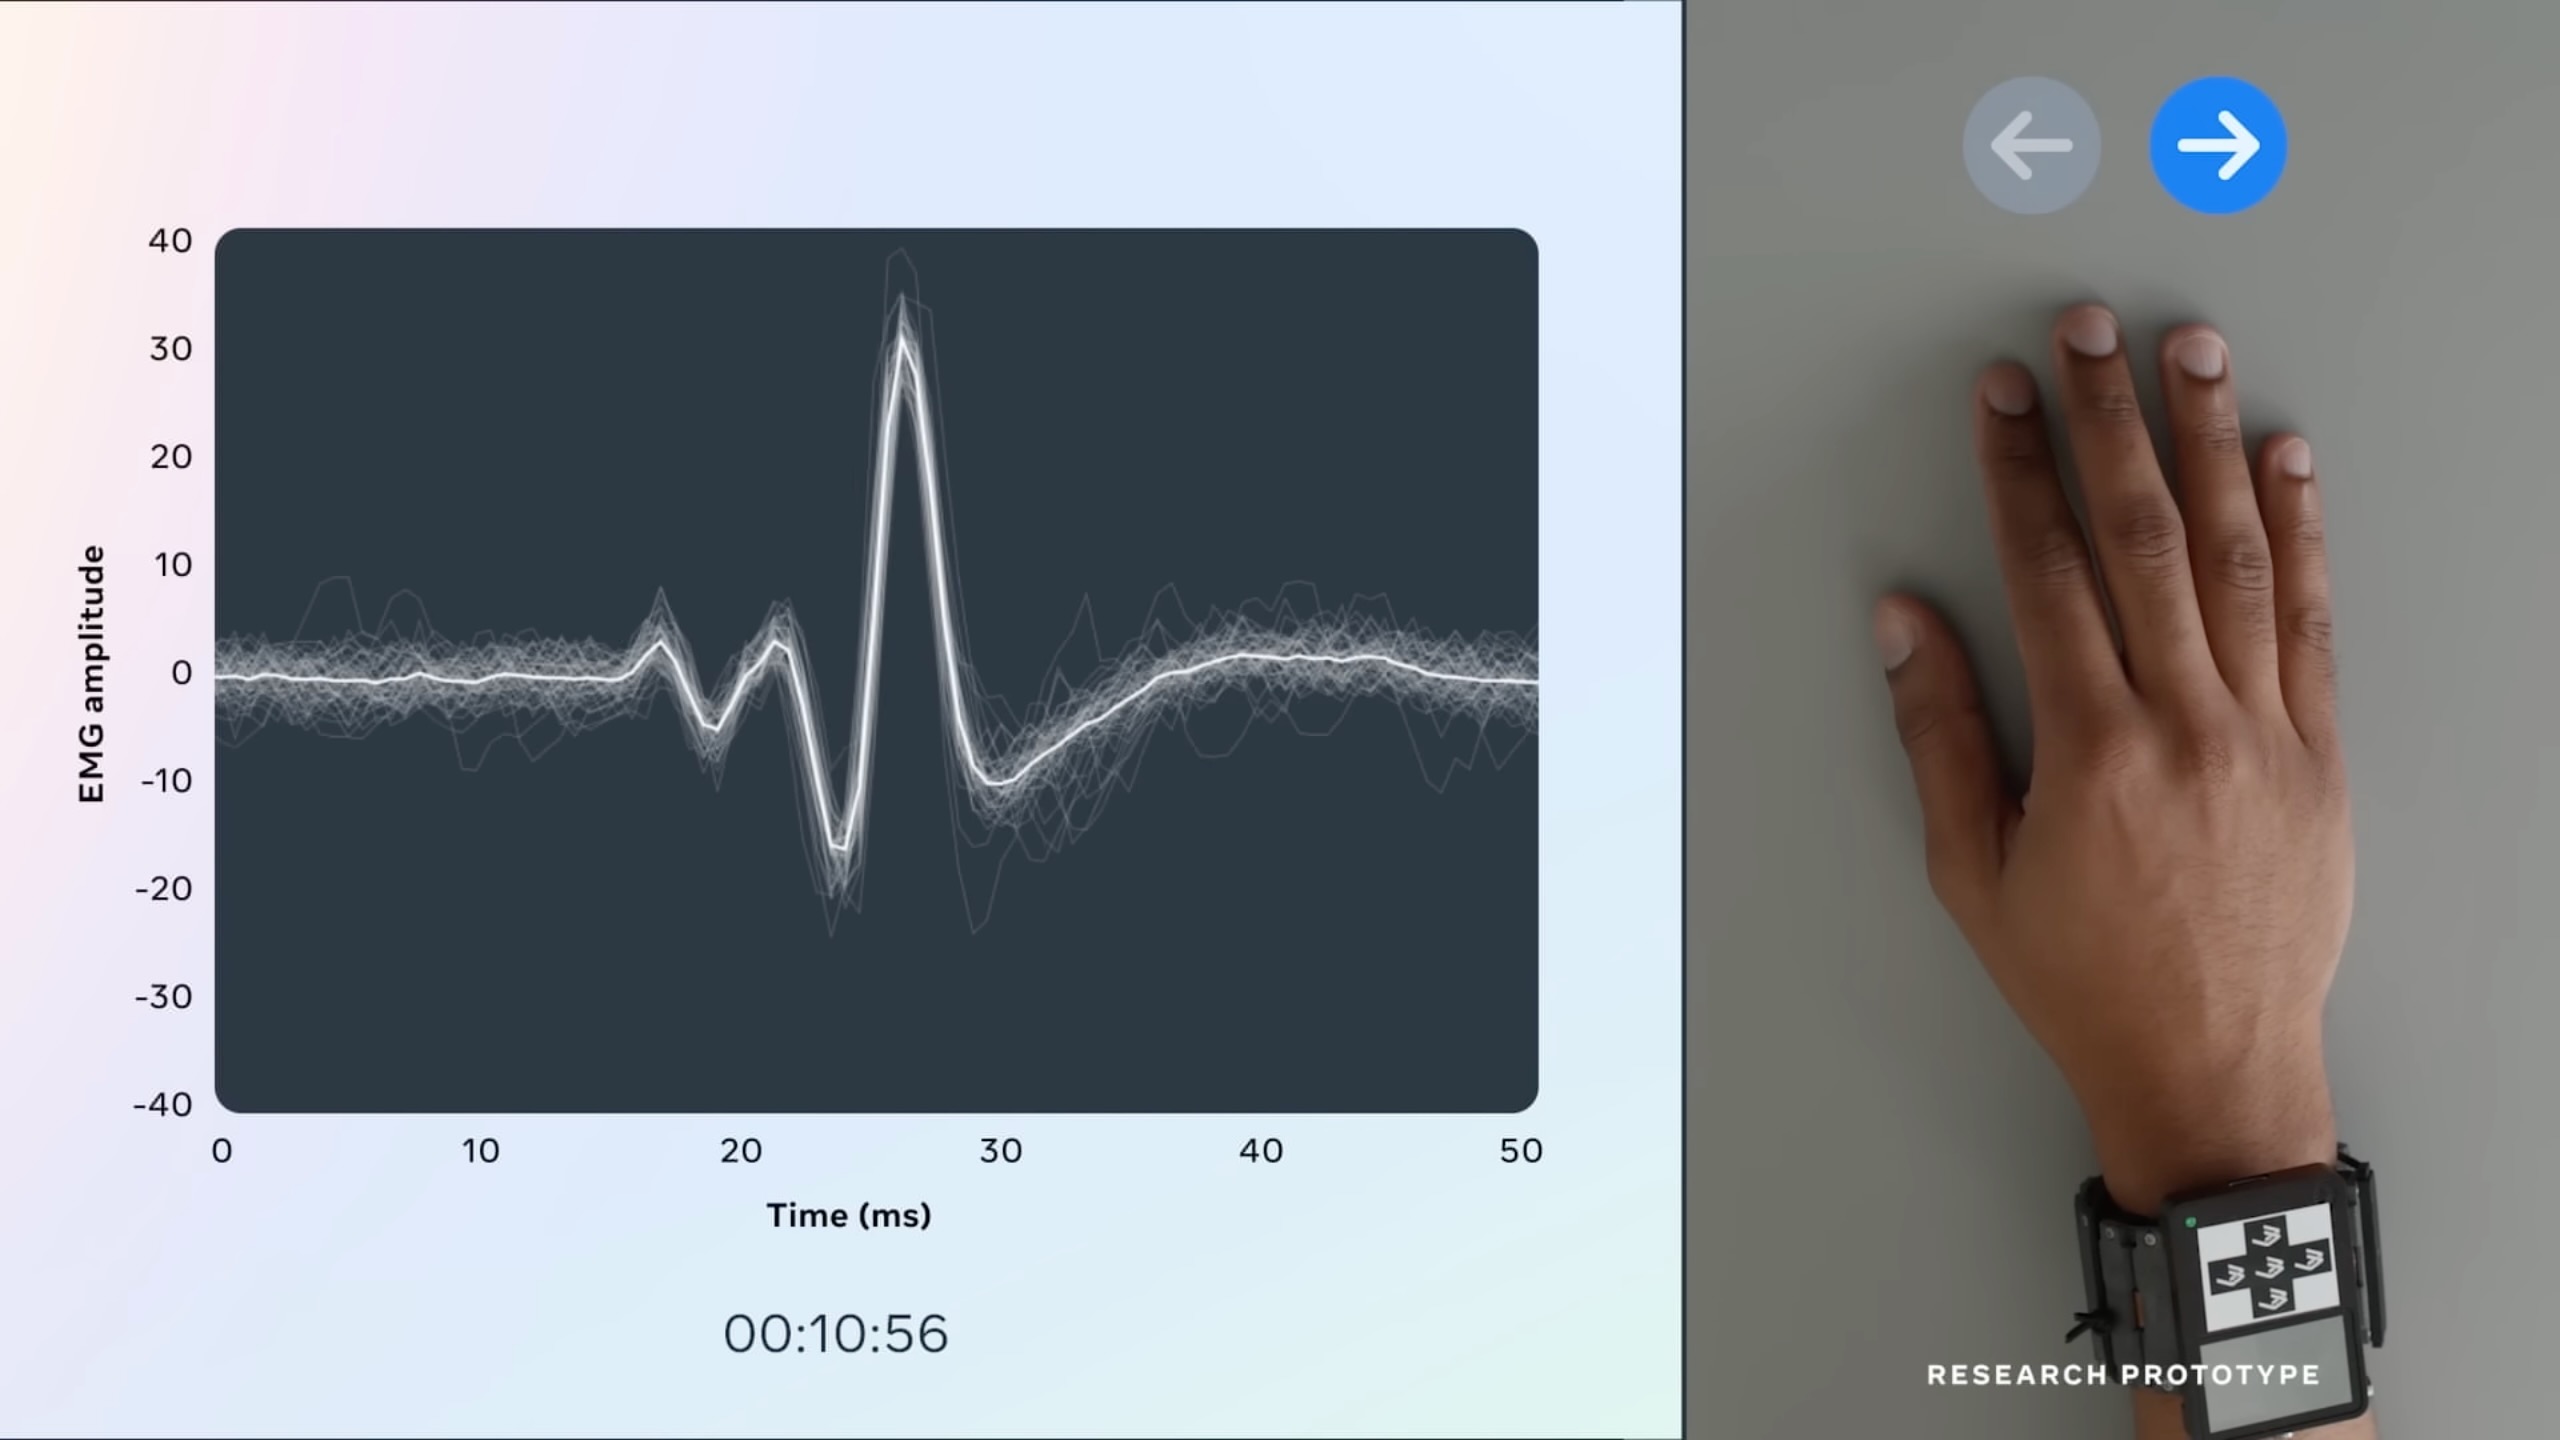 Meta Connect 2022 のスクリーンショット。Meta のニューラル インターフェイス リストバンドのコンセプト、具体的には微細な指や手のジェスチャーに基づいて脳波を記録する方法を示しています。